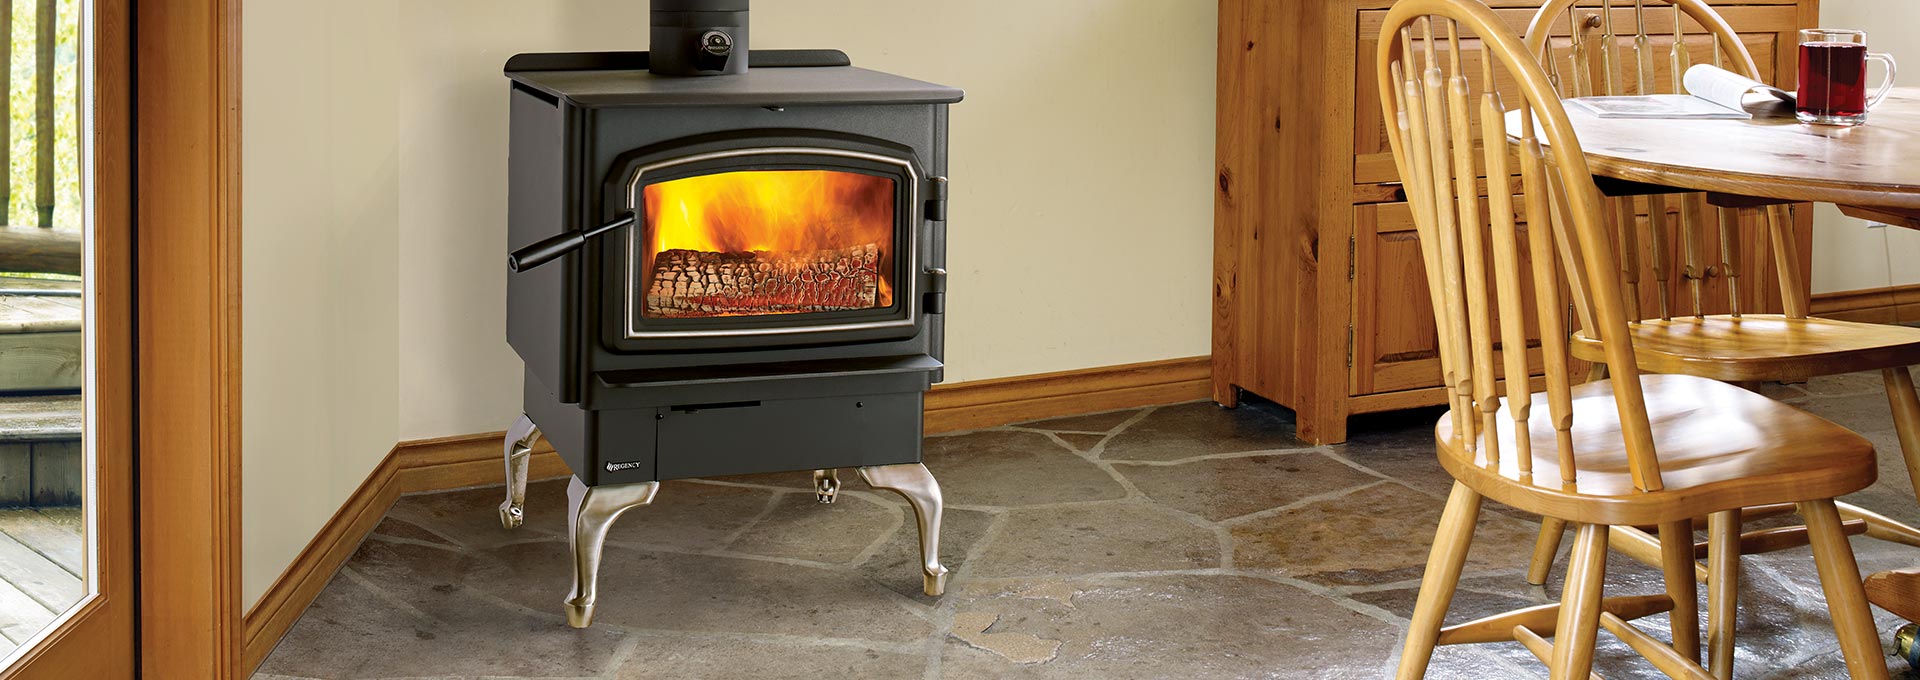 Used Wood Burning Fireplace Inserts Craigslist Luxury Wood Stoves